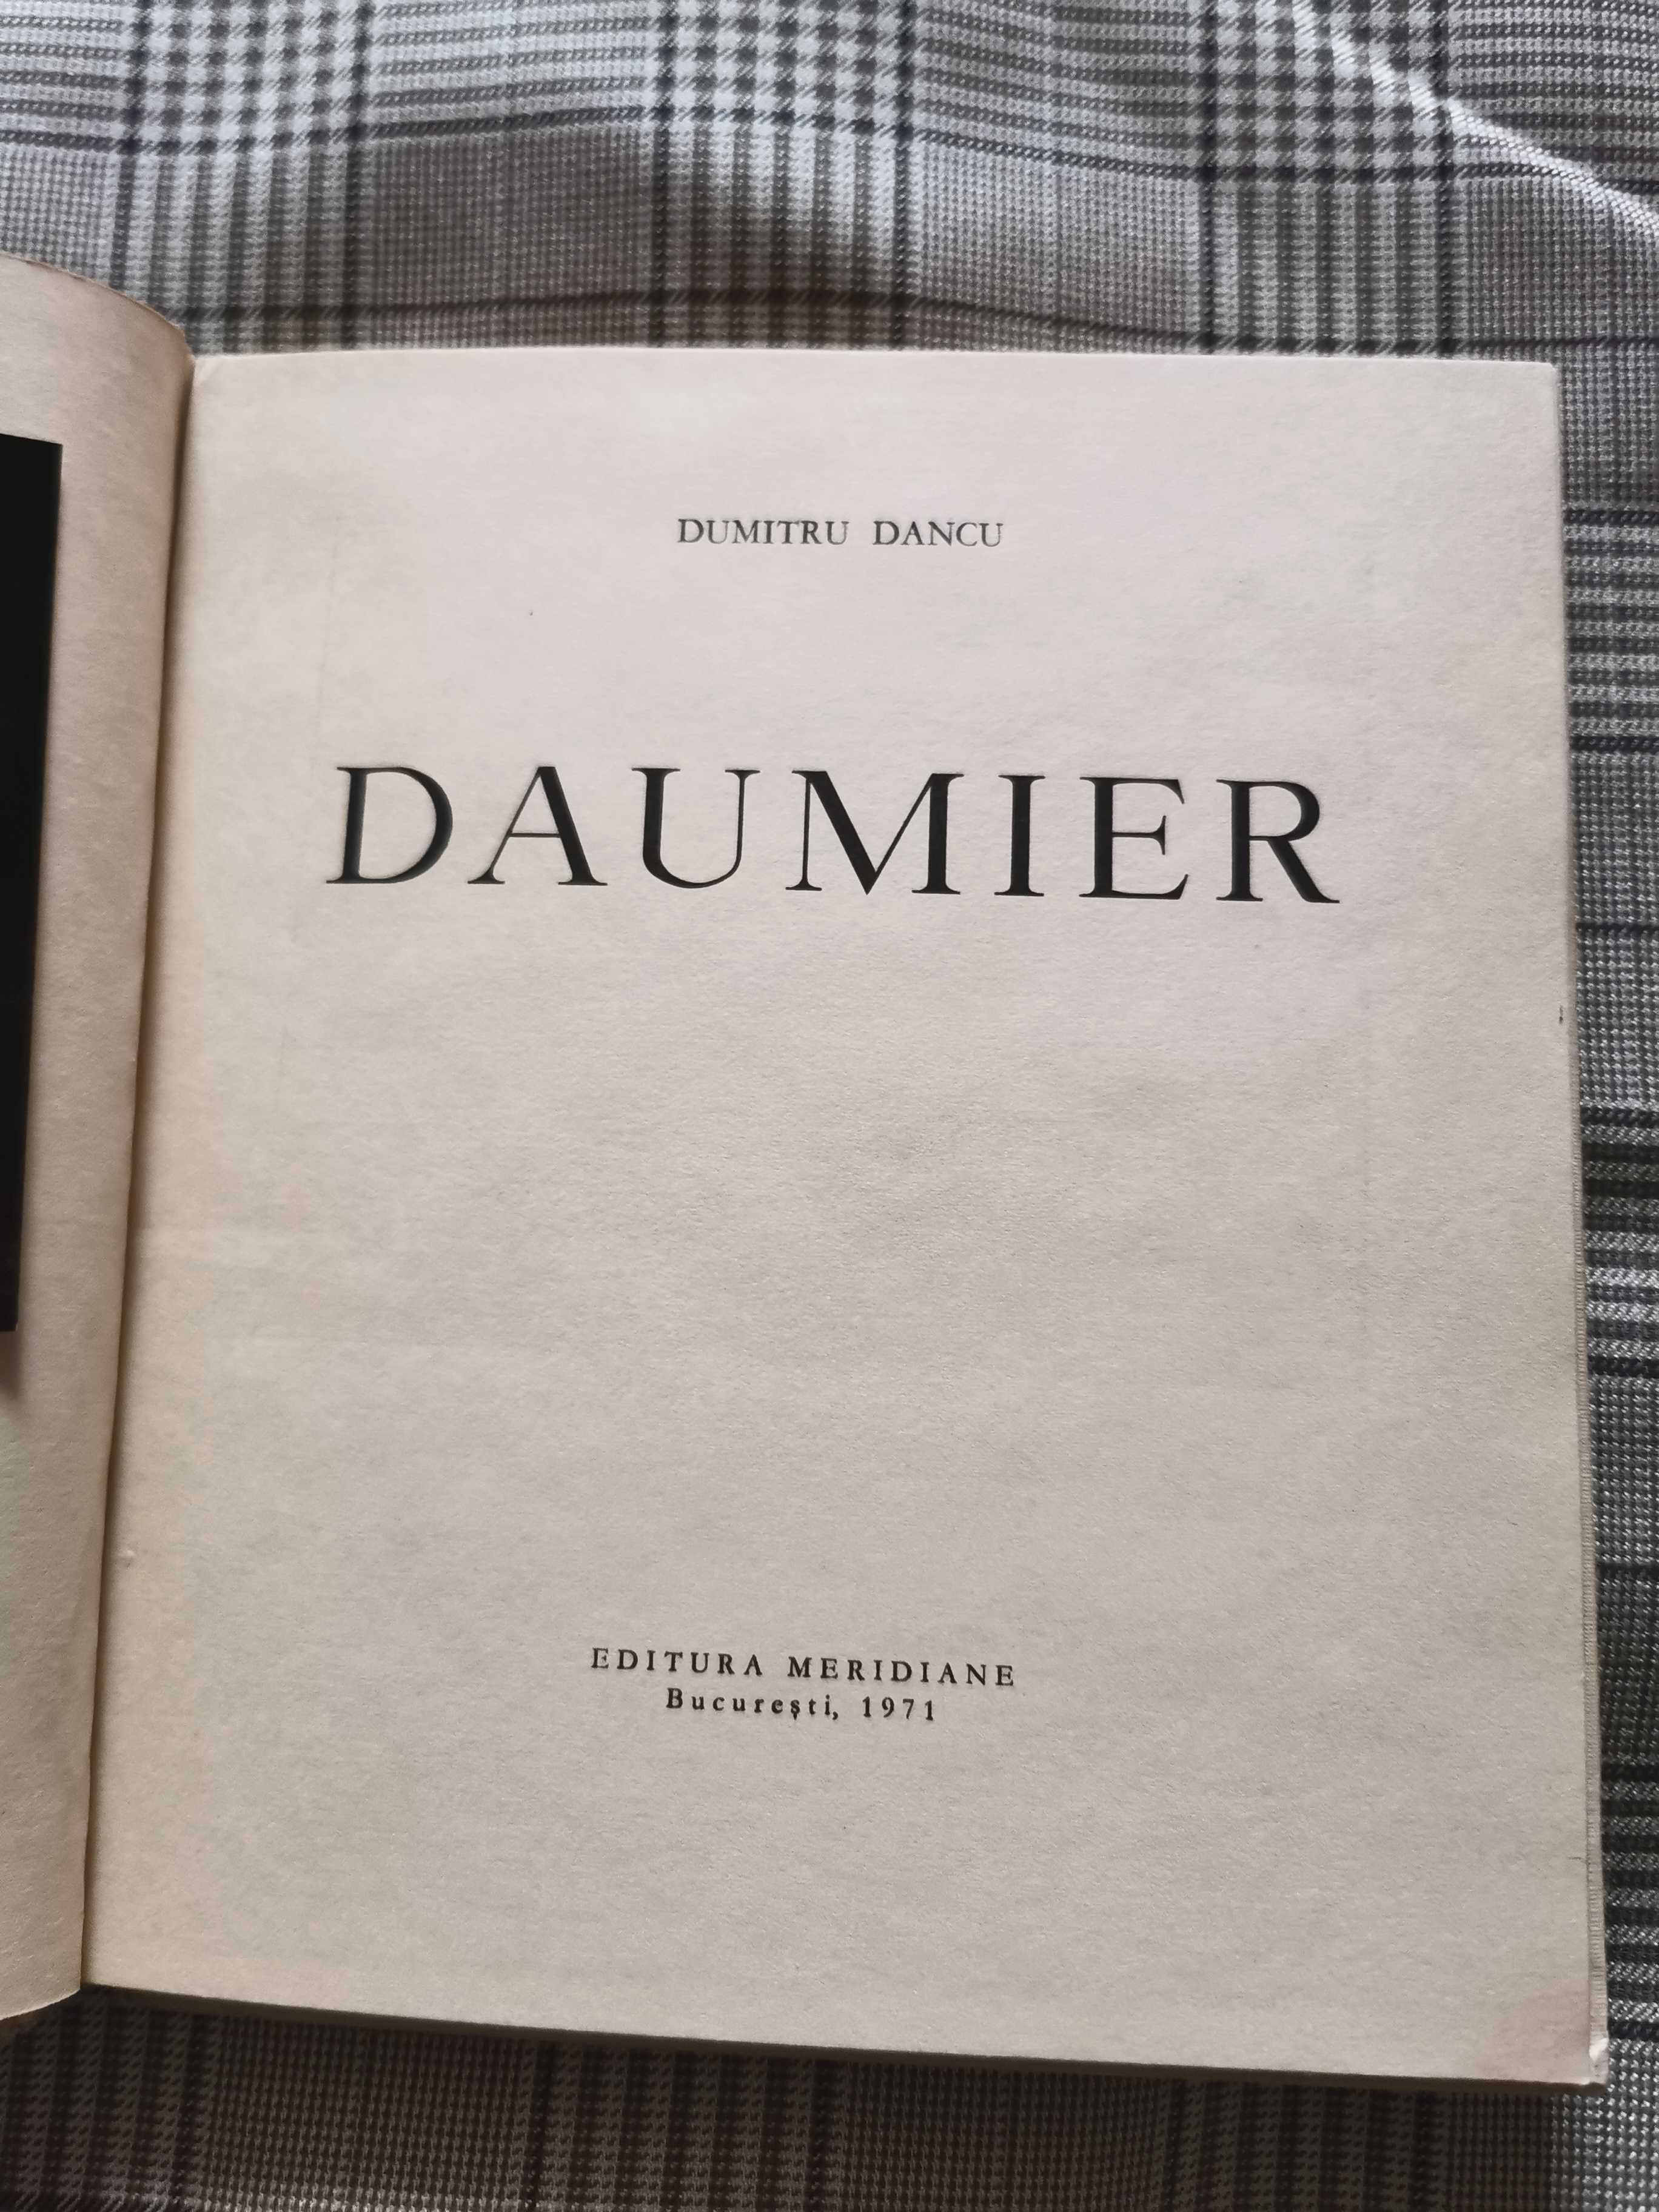 Carte/Album artistic Honore Daumier (Dumitru Dancu)